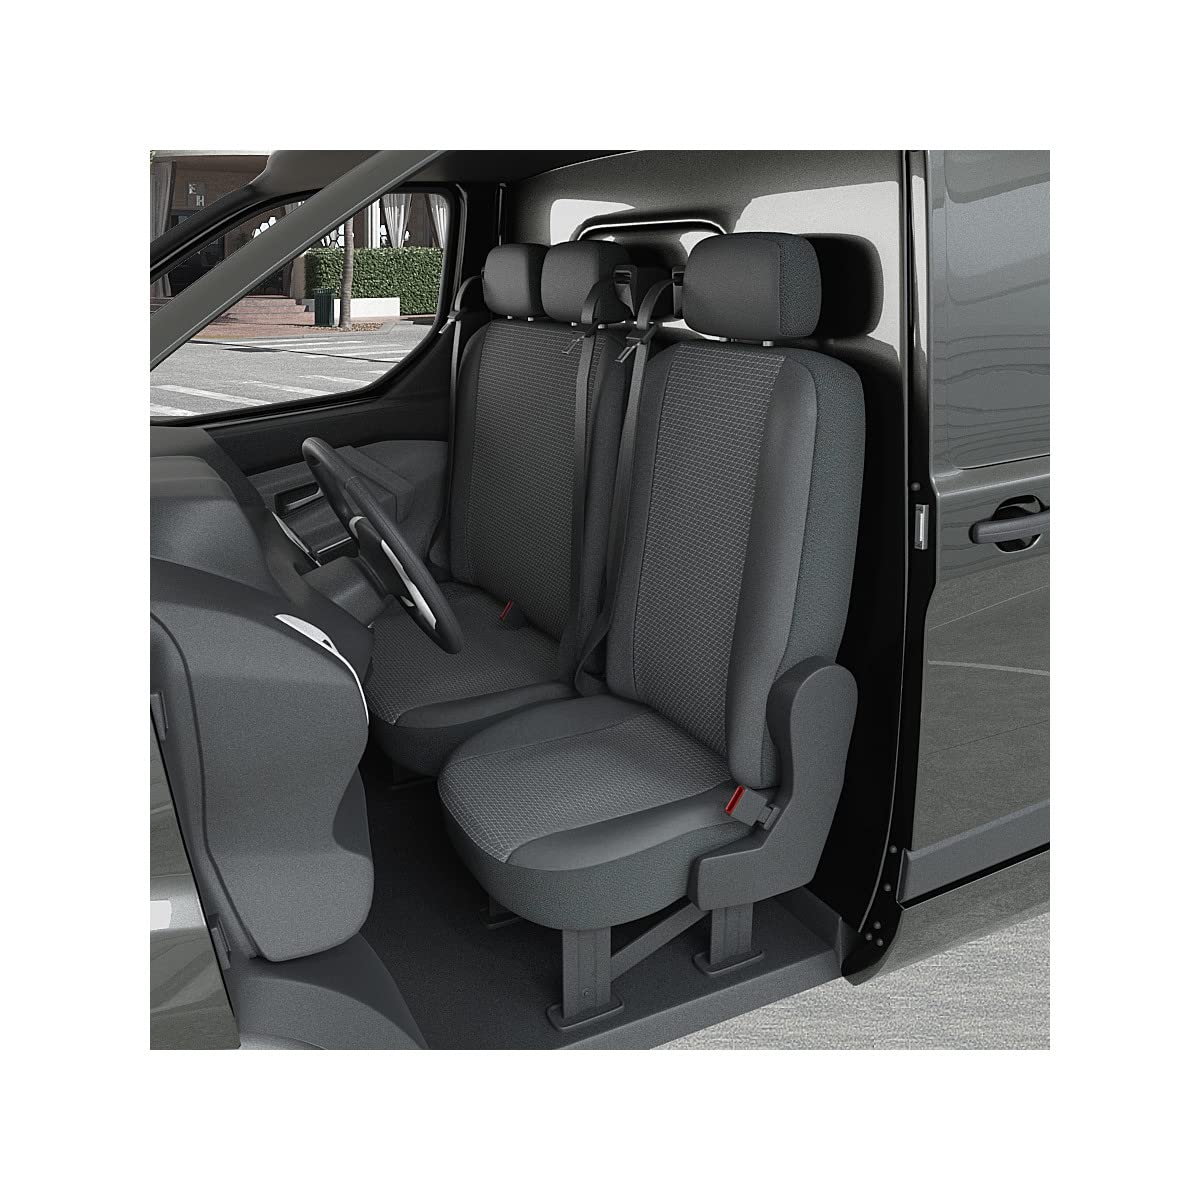 DBS Sitzbezug für Auto/Nutzfahrzeuge, Kunstleder, passgenau – schnelle Montage – kompatibel mit Airbag – Isofix – 1013186 von DBS